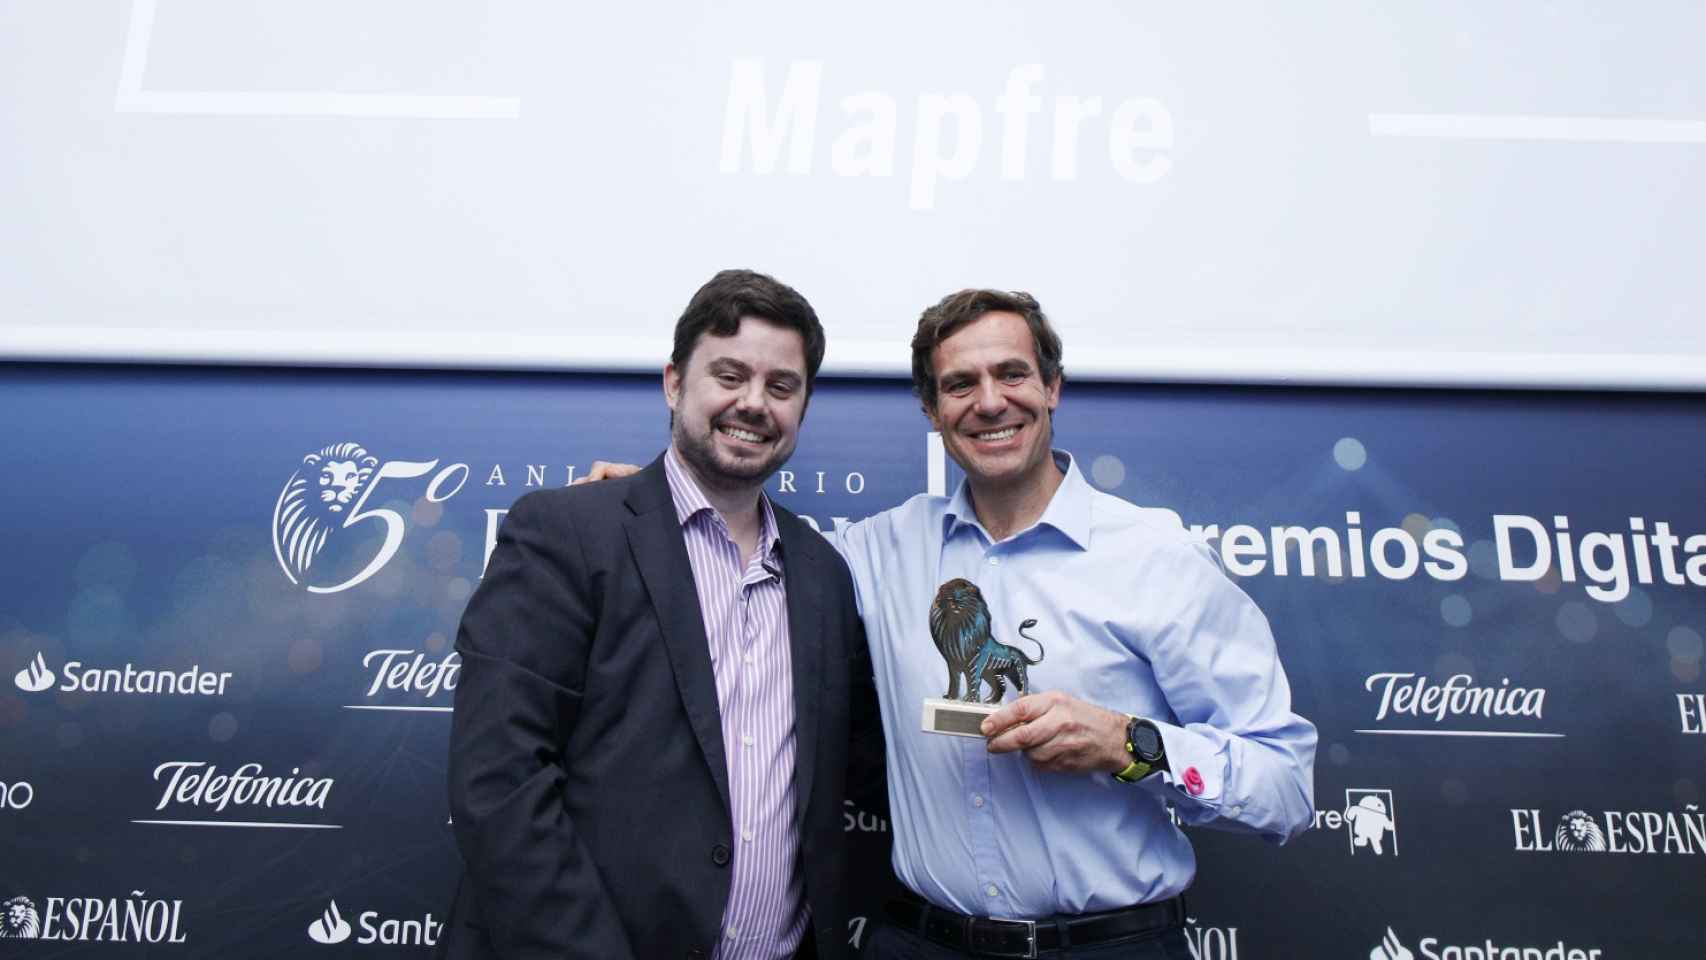 Categoría Inteligencia Artificial: Mapfre, plataforma digital Savia. Recoge el premio Pedro Díaz Yuste, director general de Savia y entrega Arturo Criado, redactor jefe de Empresas y Medio de EL ESPAÑOL.